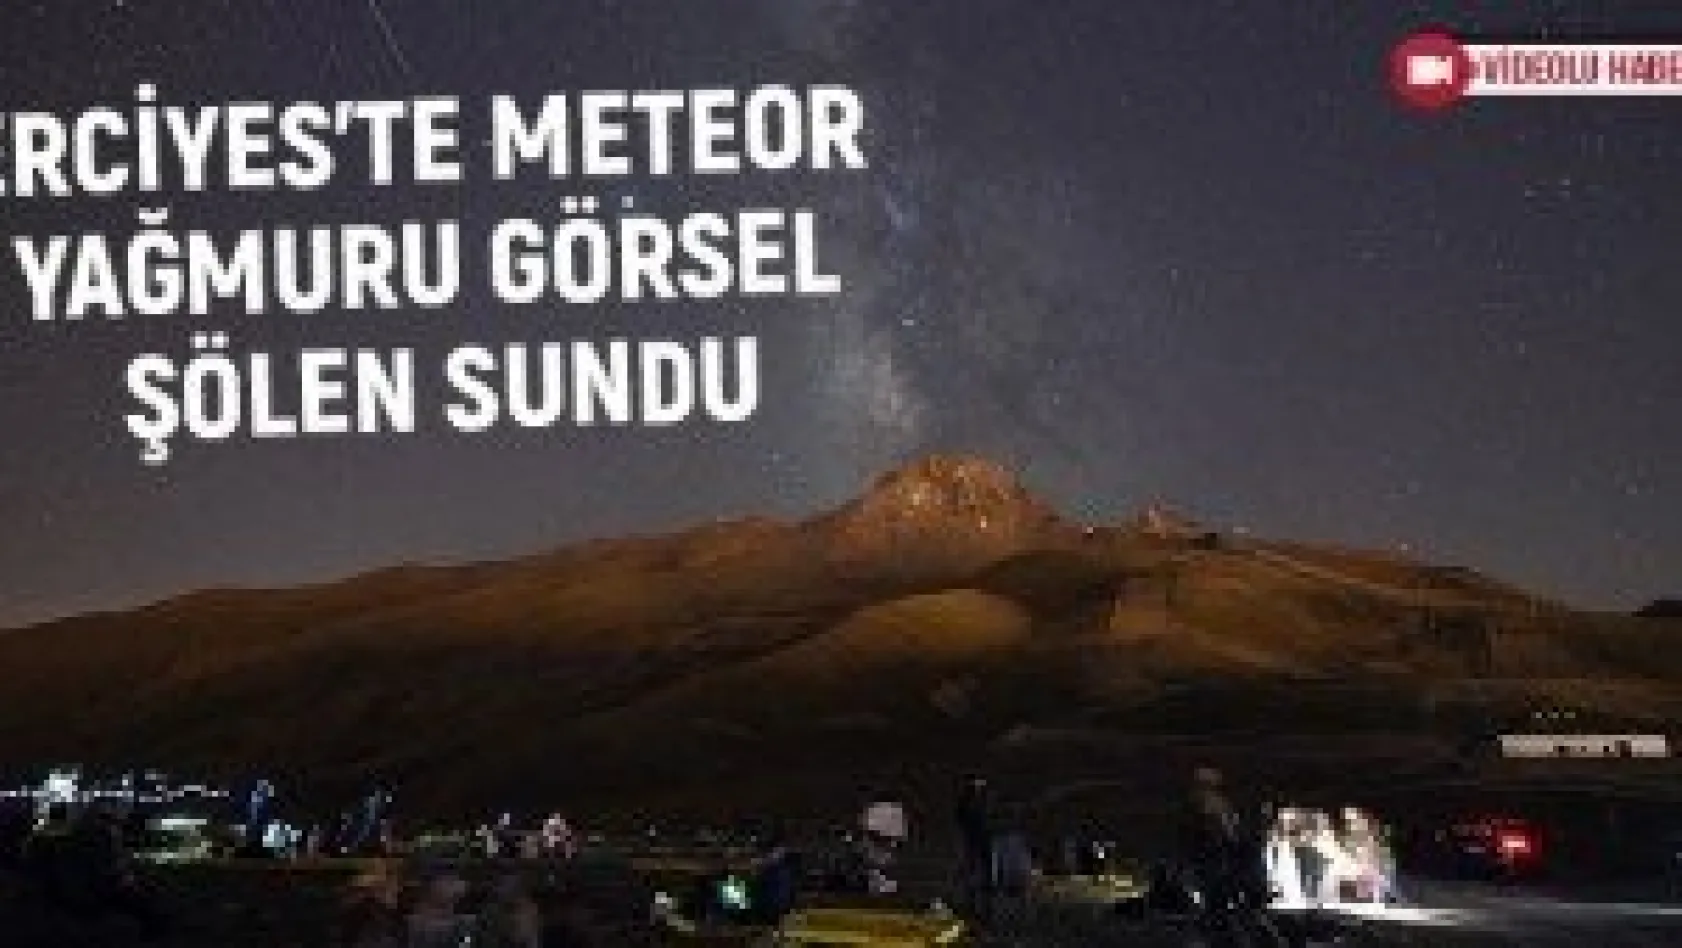 Erciyes'te meteor yağmuru görsel şölen sundu